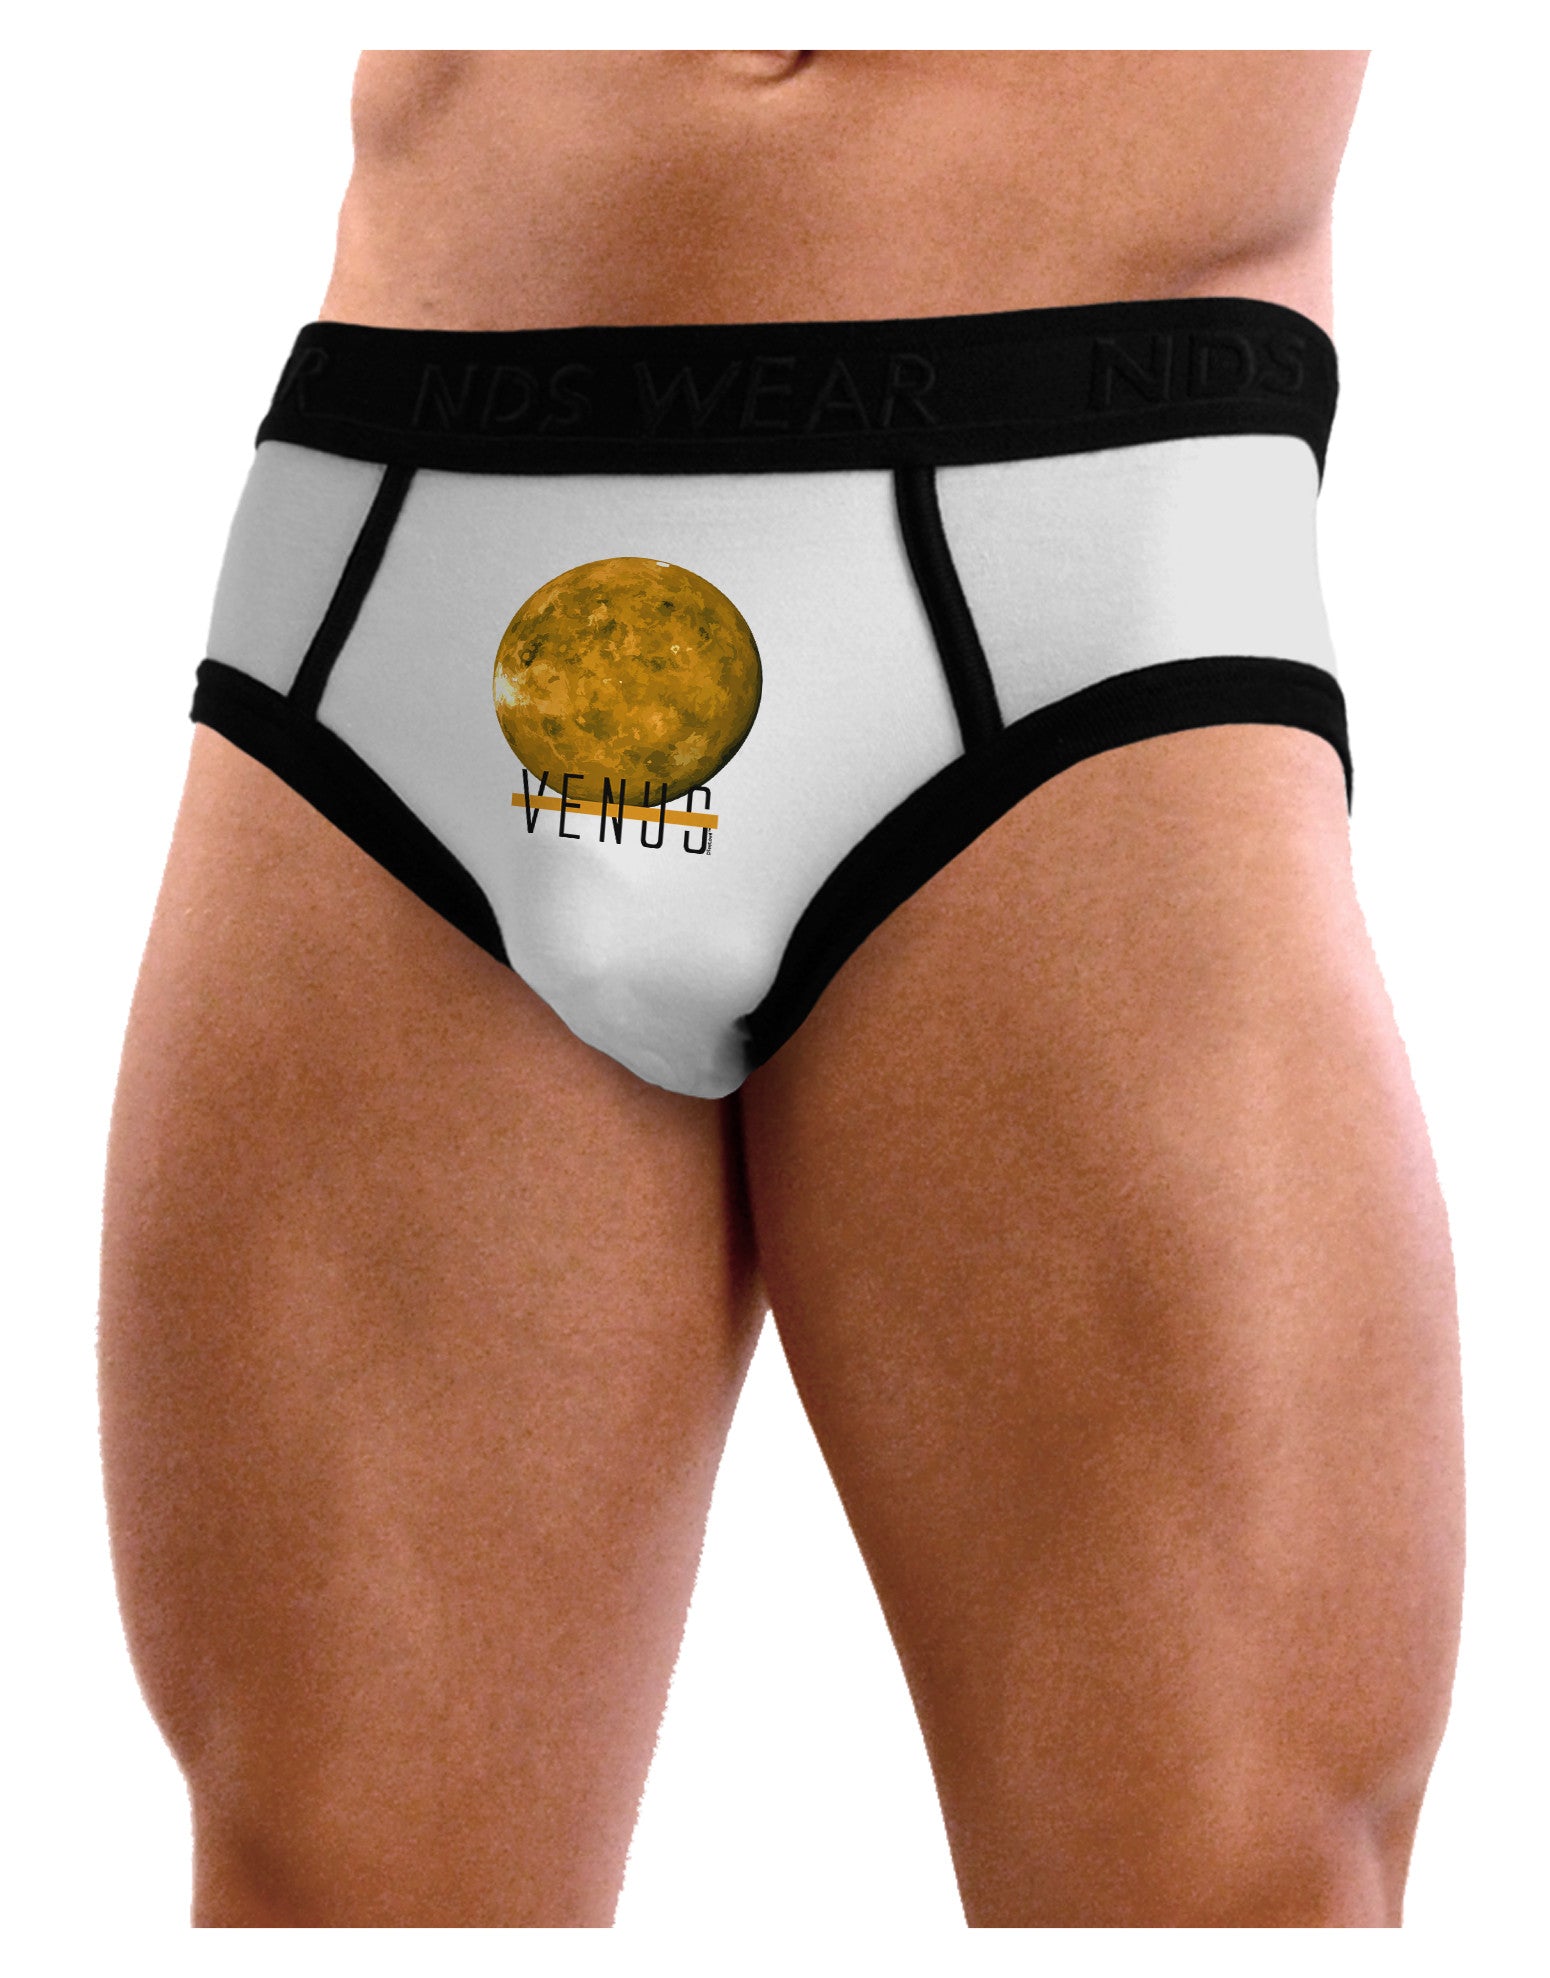 Planet Venus Text Mens NDS Wear Briefs Underwear - Davson Sales